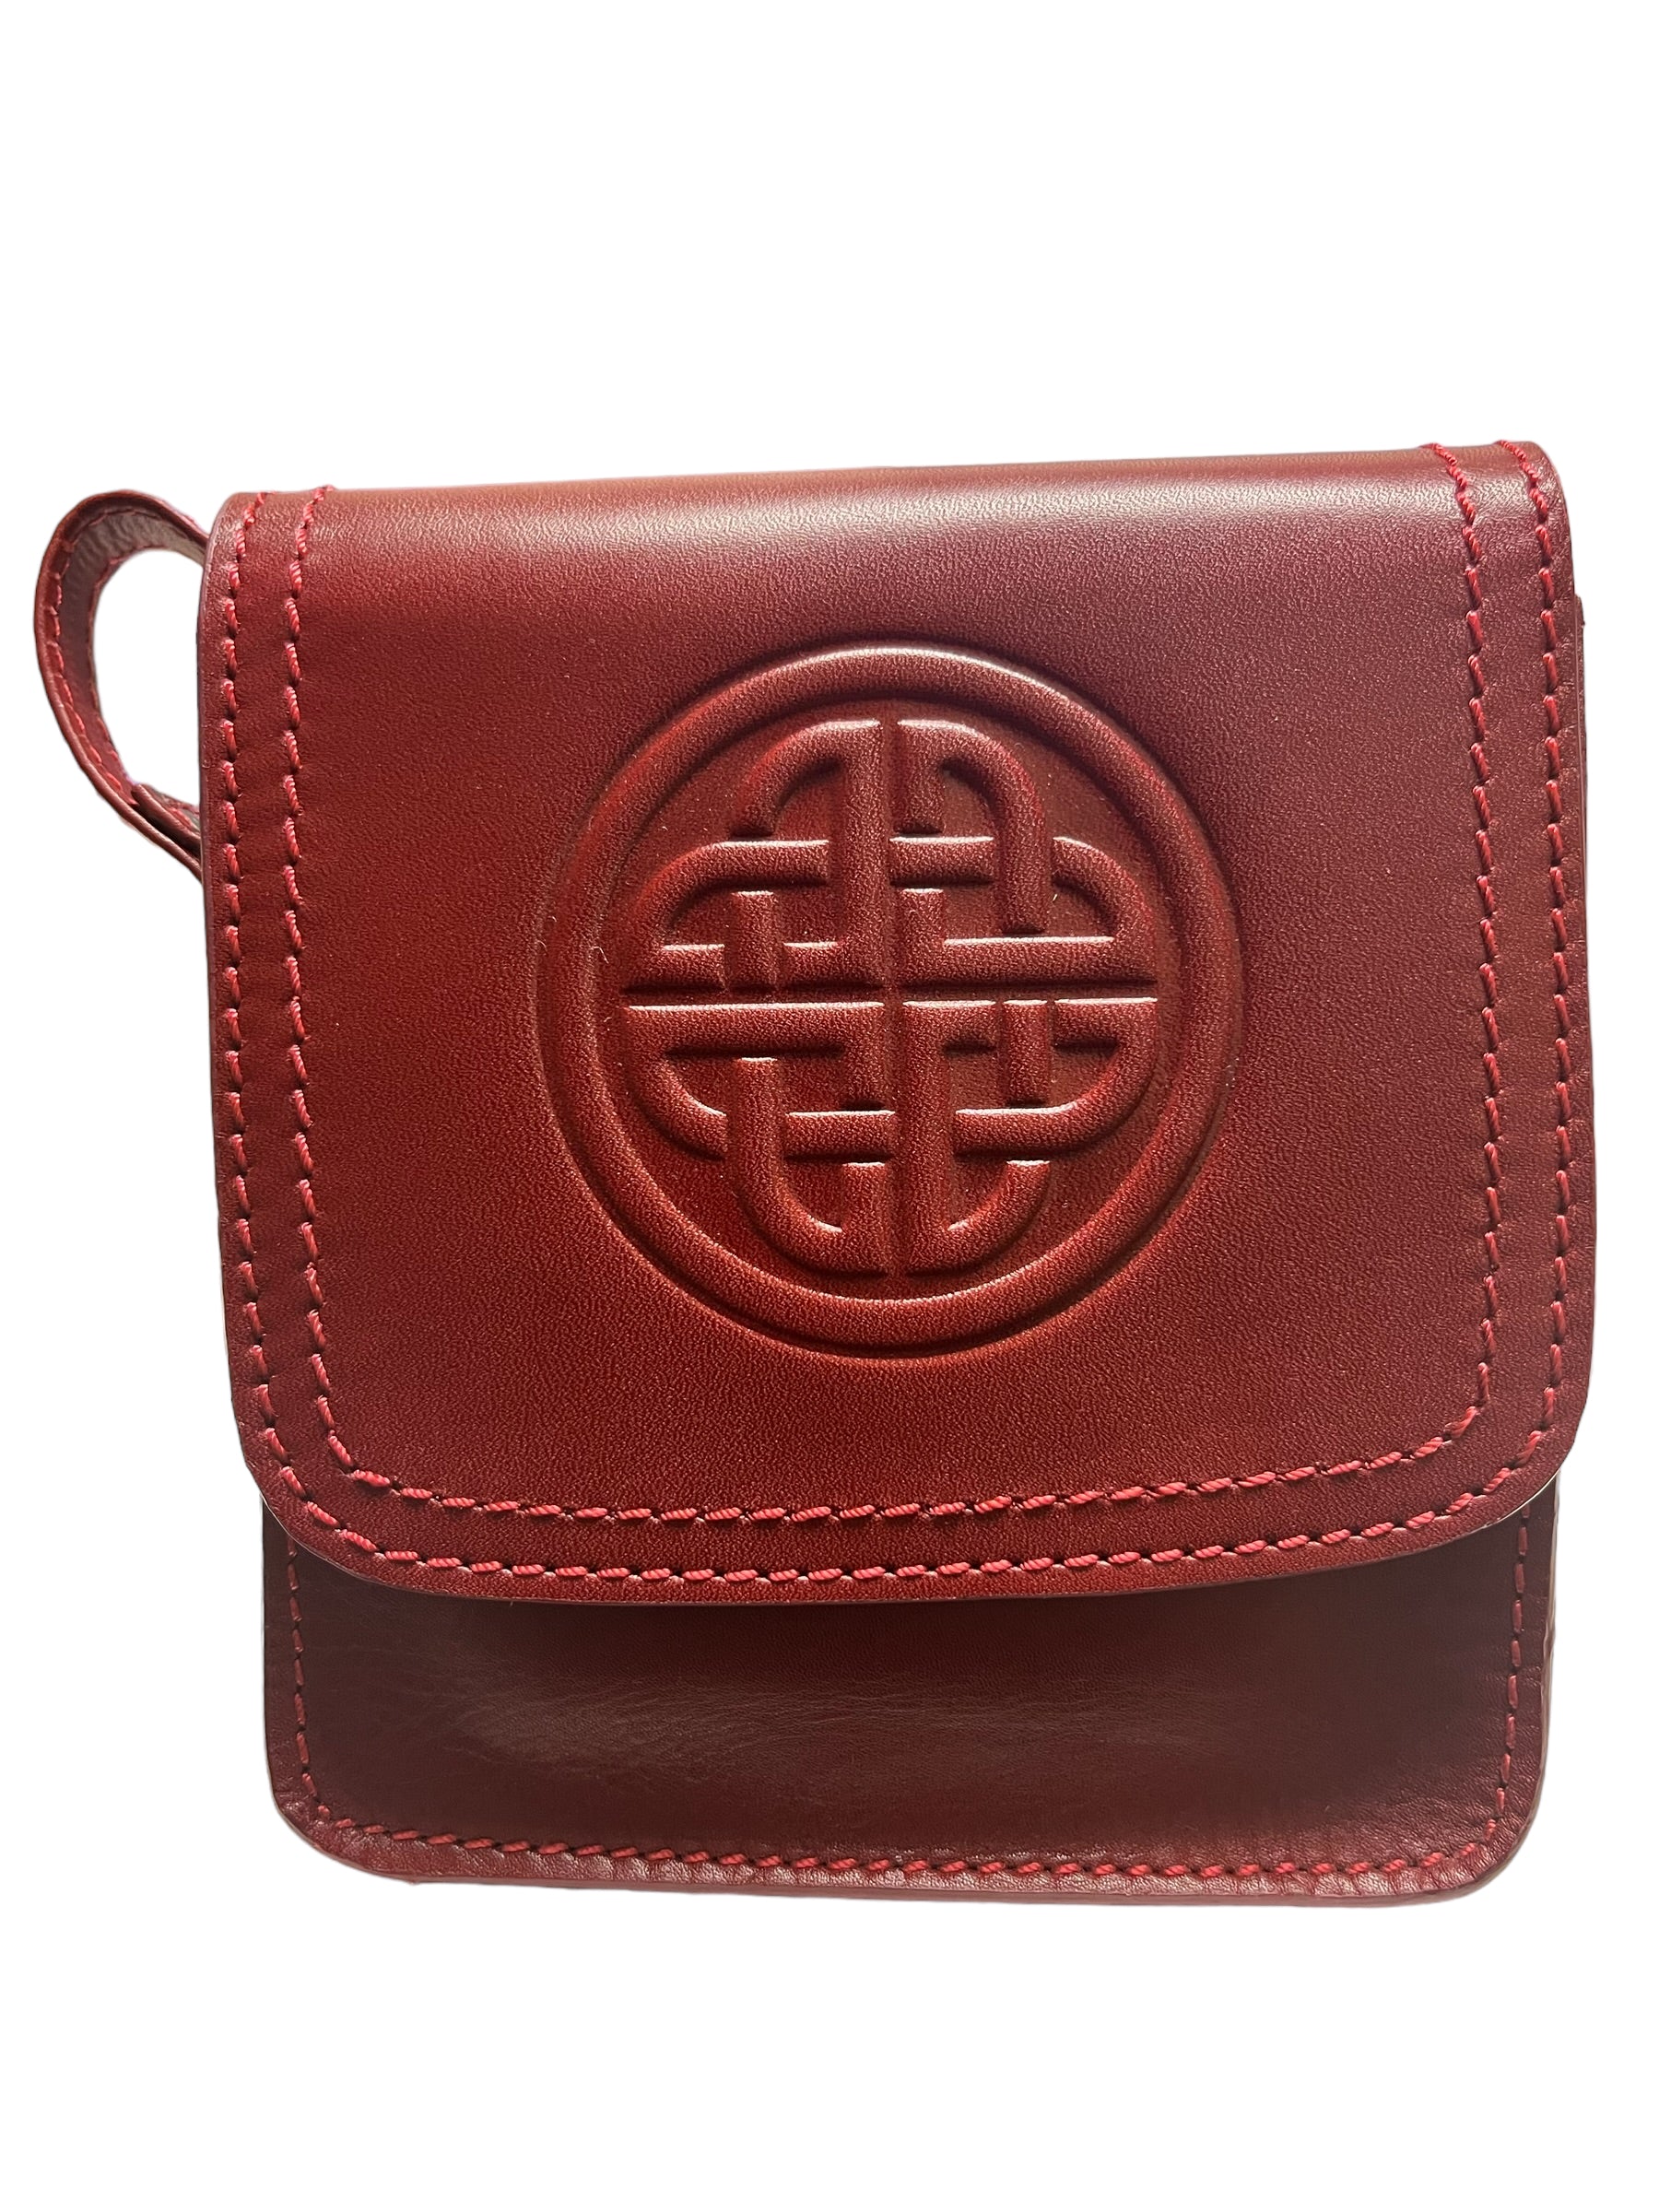 Celtic Knot Women's Leather Shoulder Bag